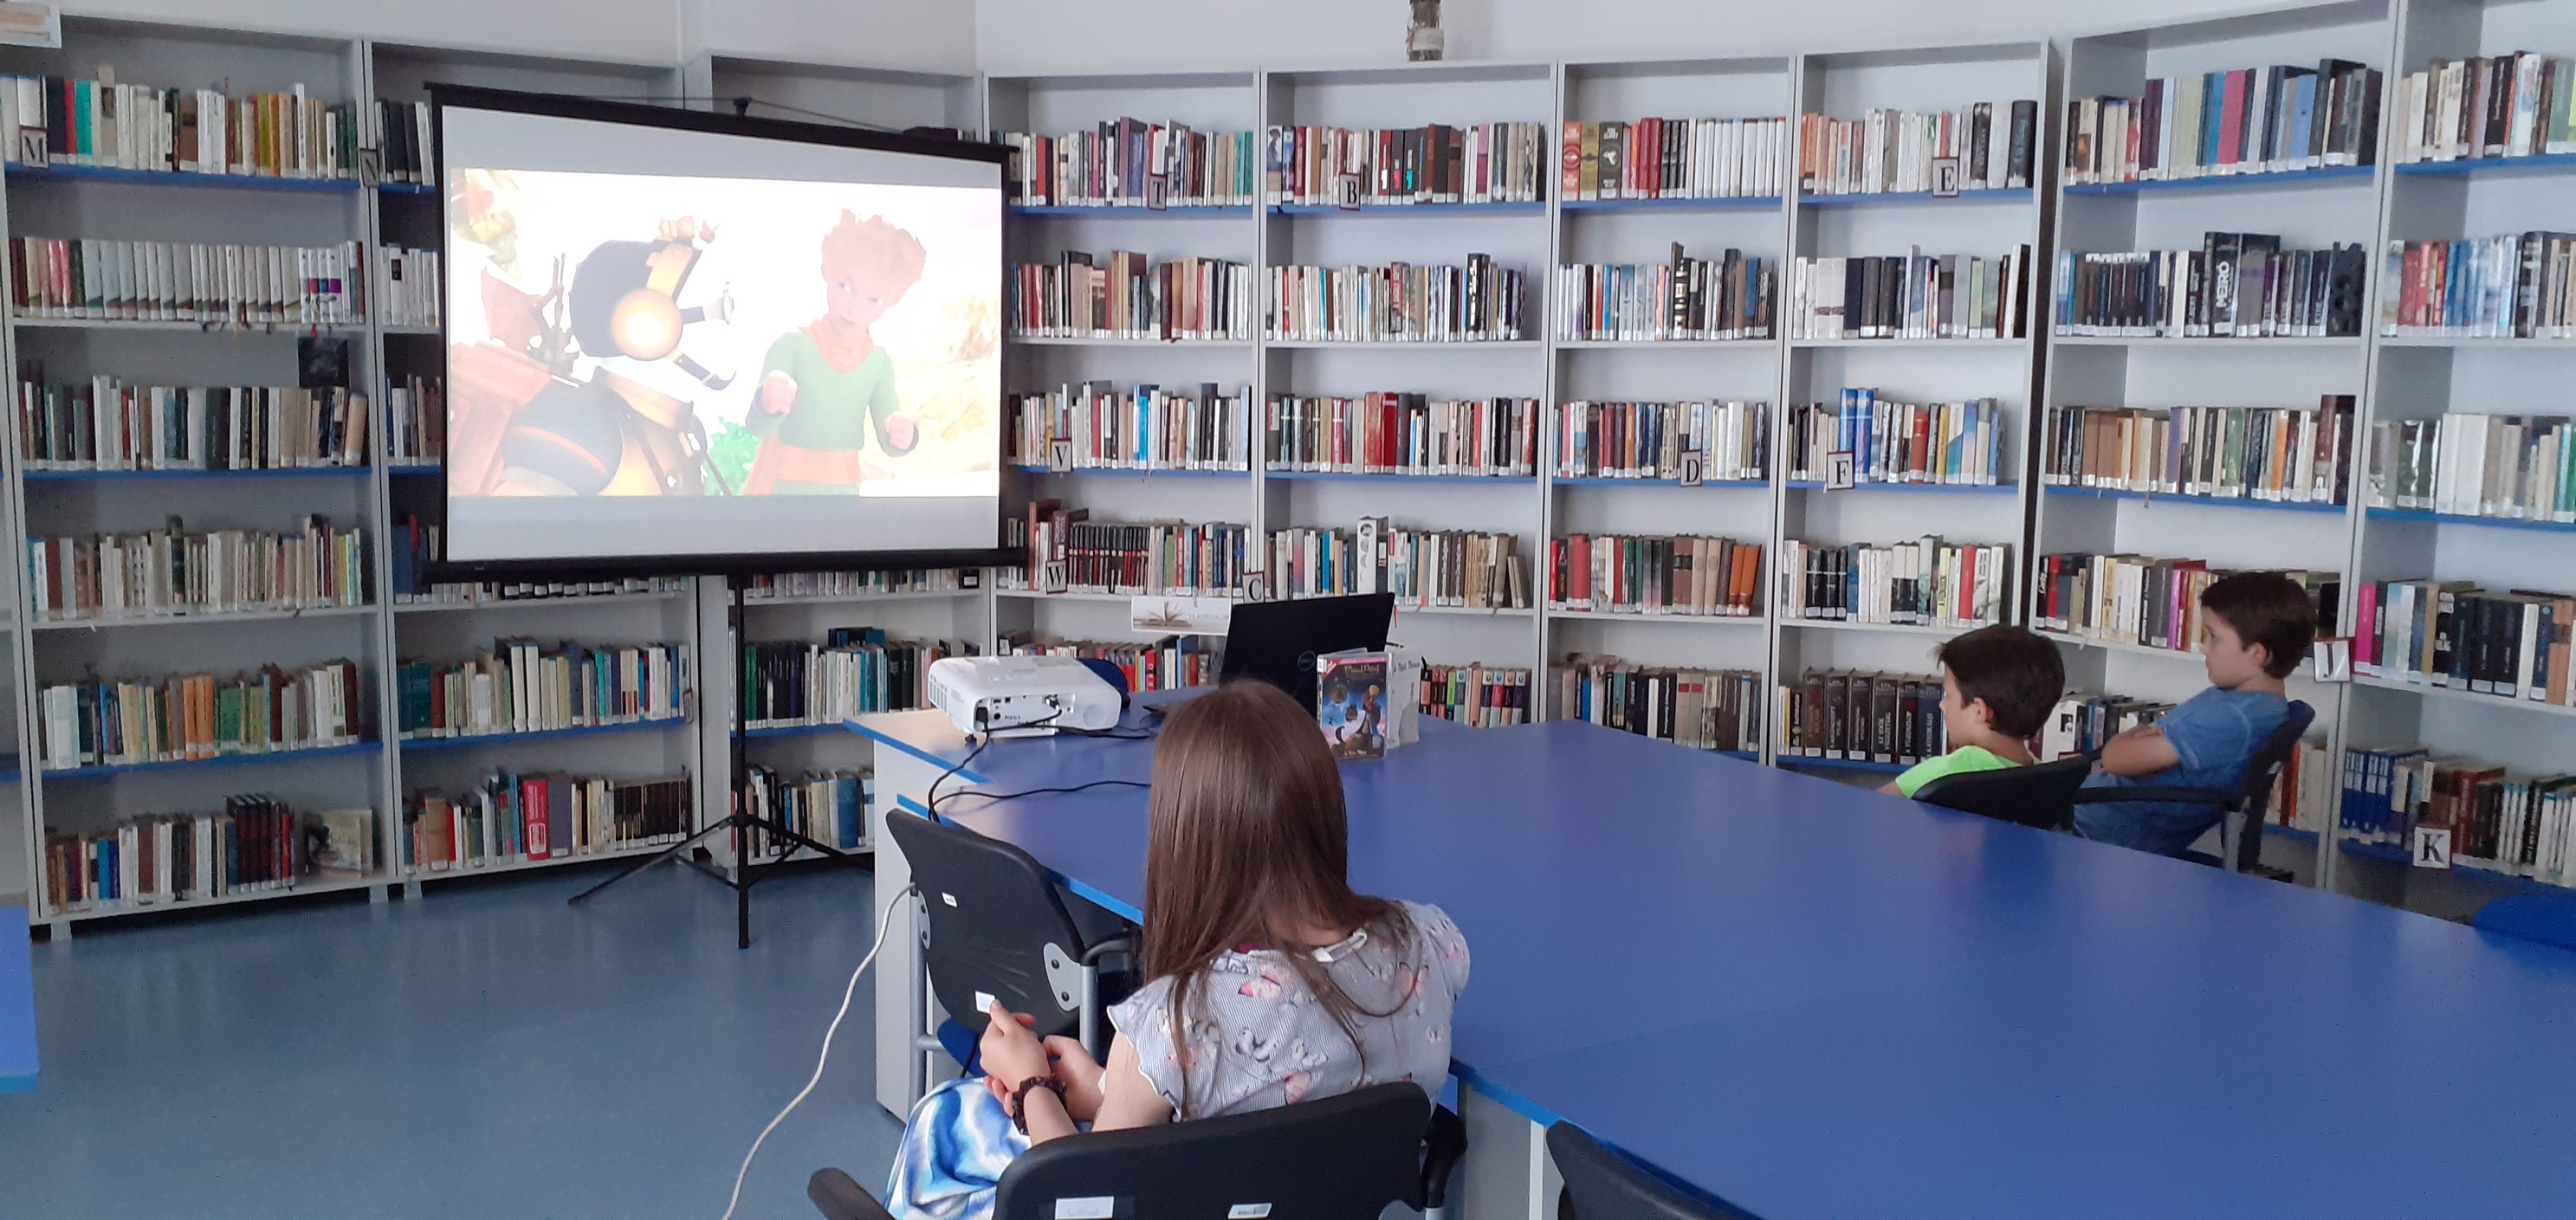 Zeci de biblioteci din județul Cluj vor fi modernizate și dotate cu echipamente IT. FOTO: Biblioteca Judeţeană „Octavian Goga” Cluj